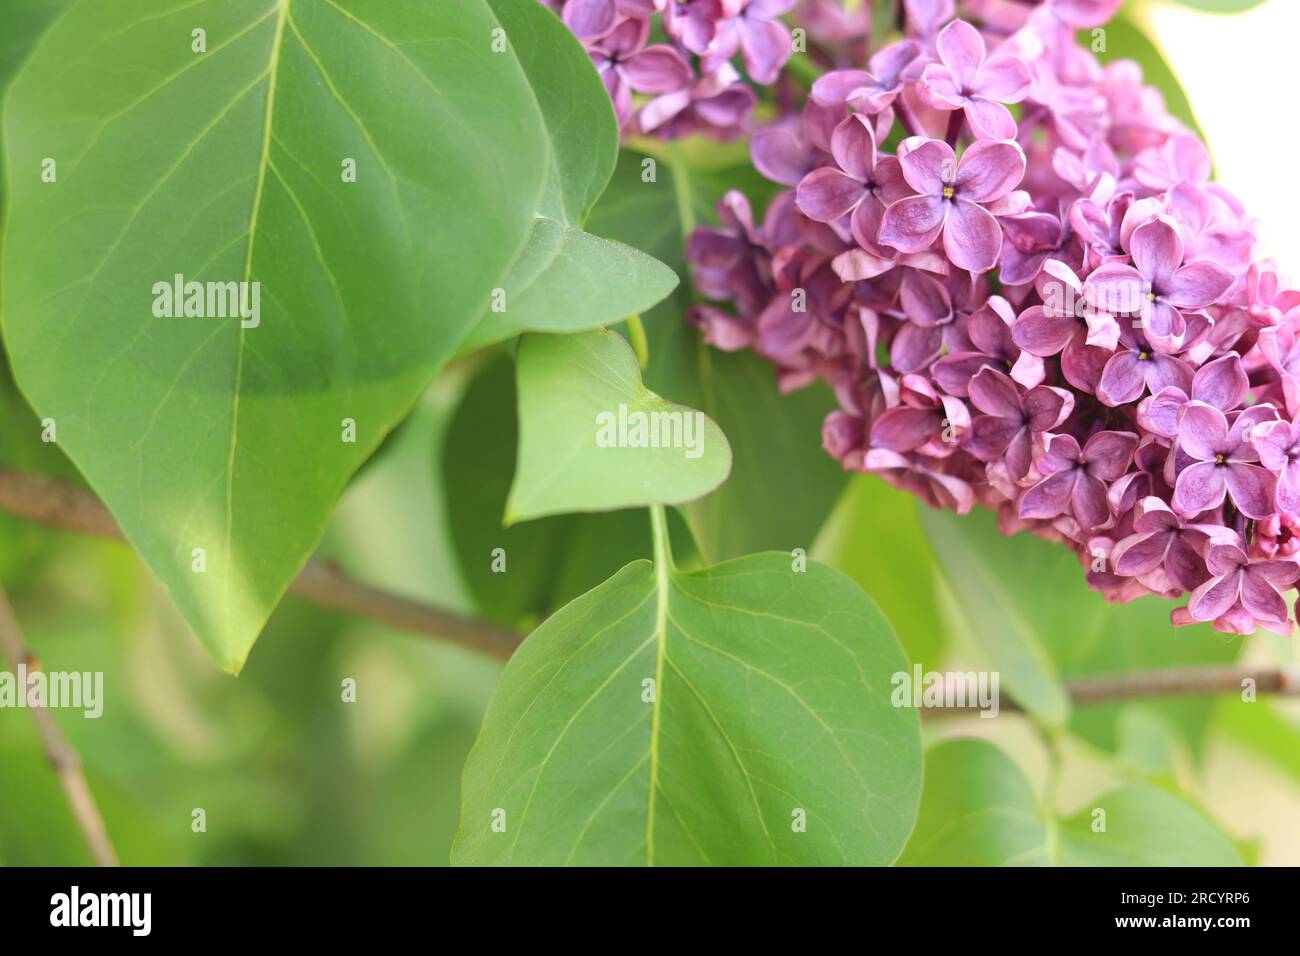 Fliederblumen schließen sich. Geblümter Hintergrund mit pinkfarbenen Fliederblumen und grünen Blättern. Eine Fülle Fliederblumen für ein romantisches Blumenbanner Stockfoto